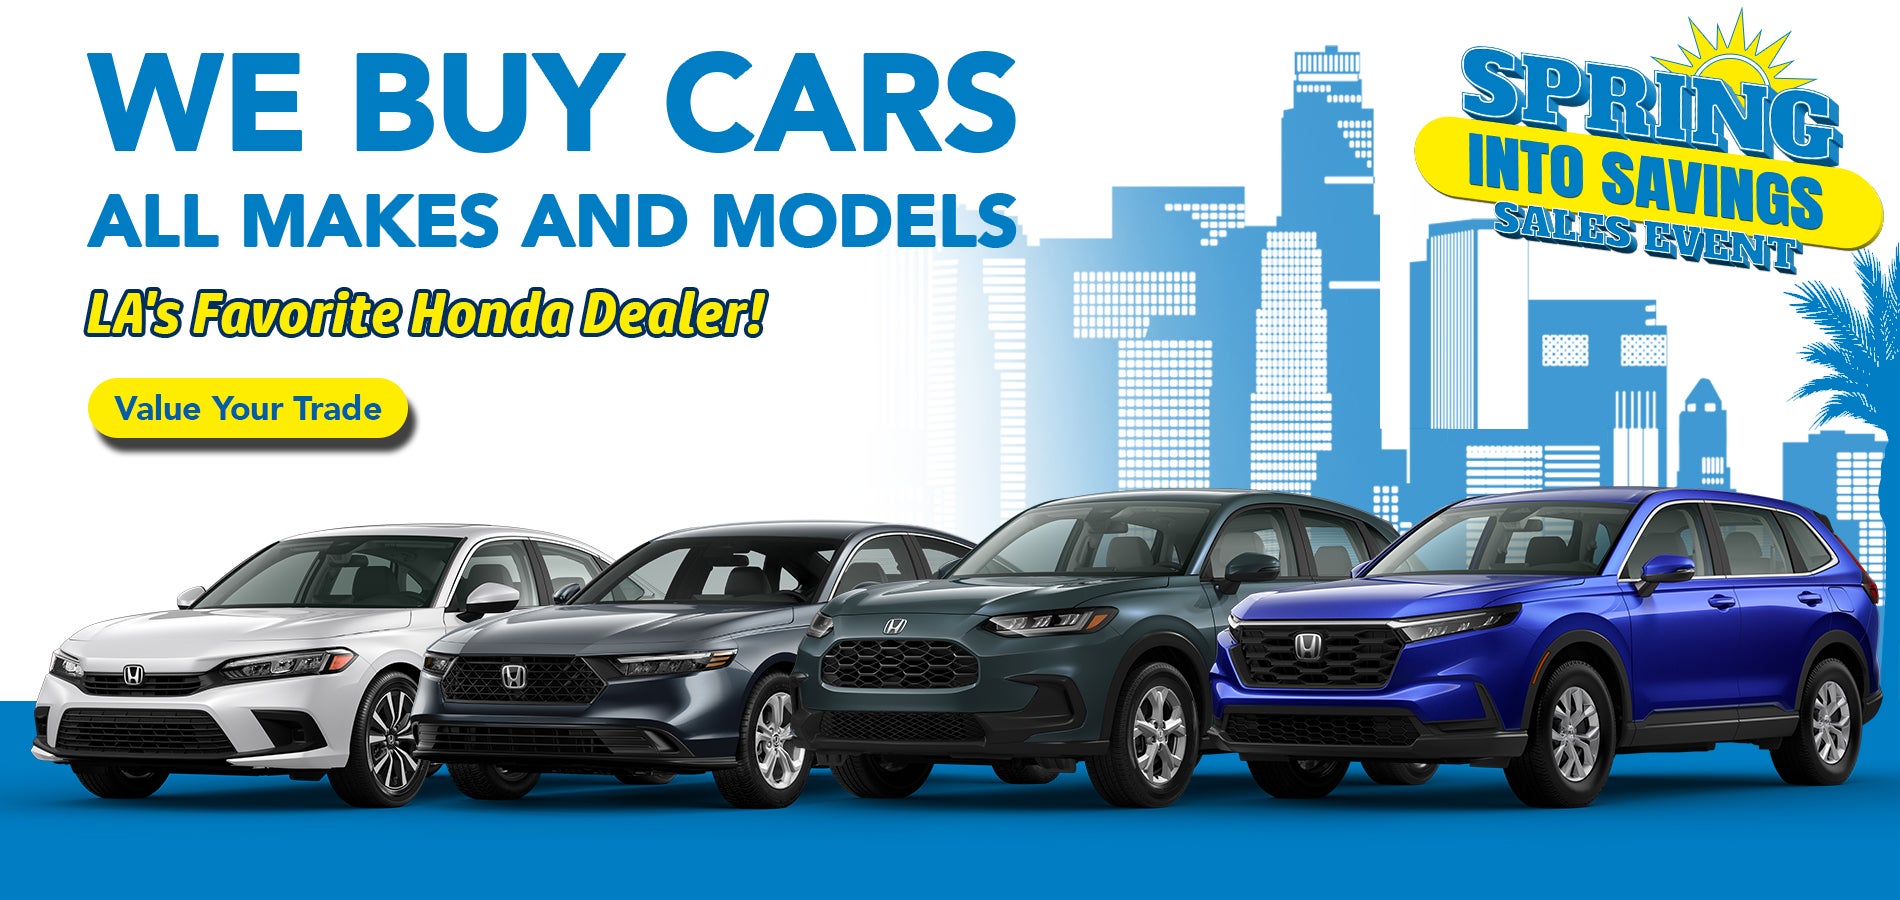 We Buy Cars All Makes and Models at Honda DTLA!